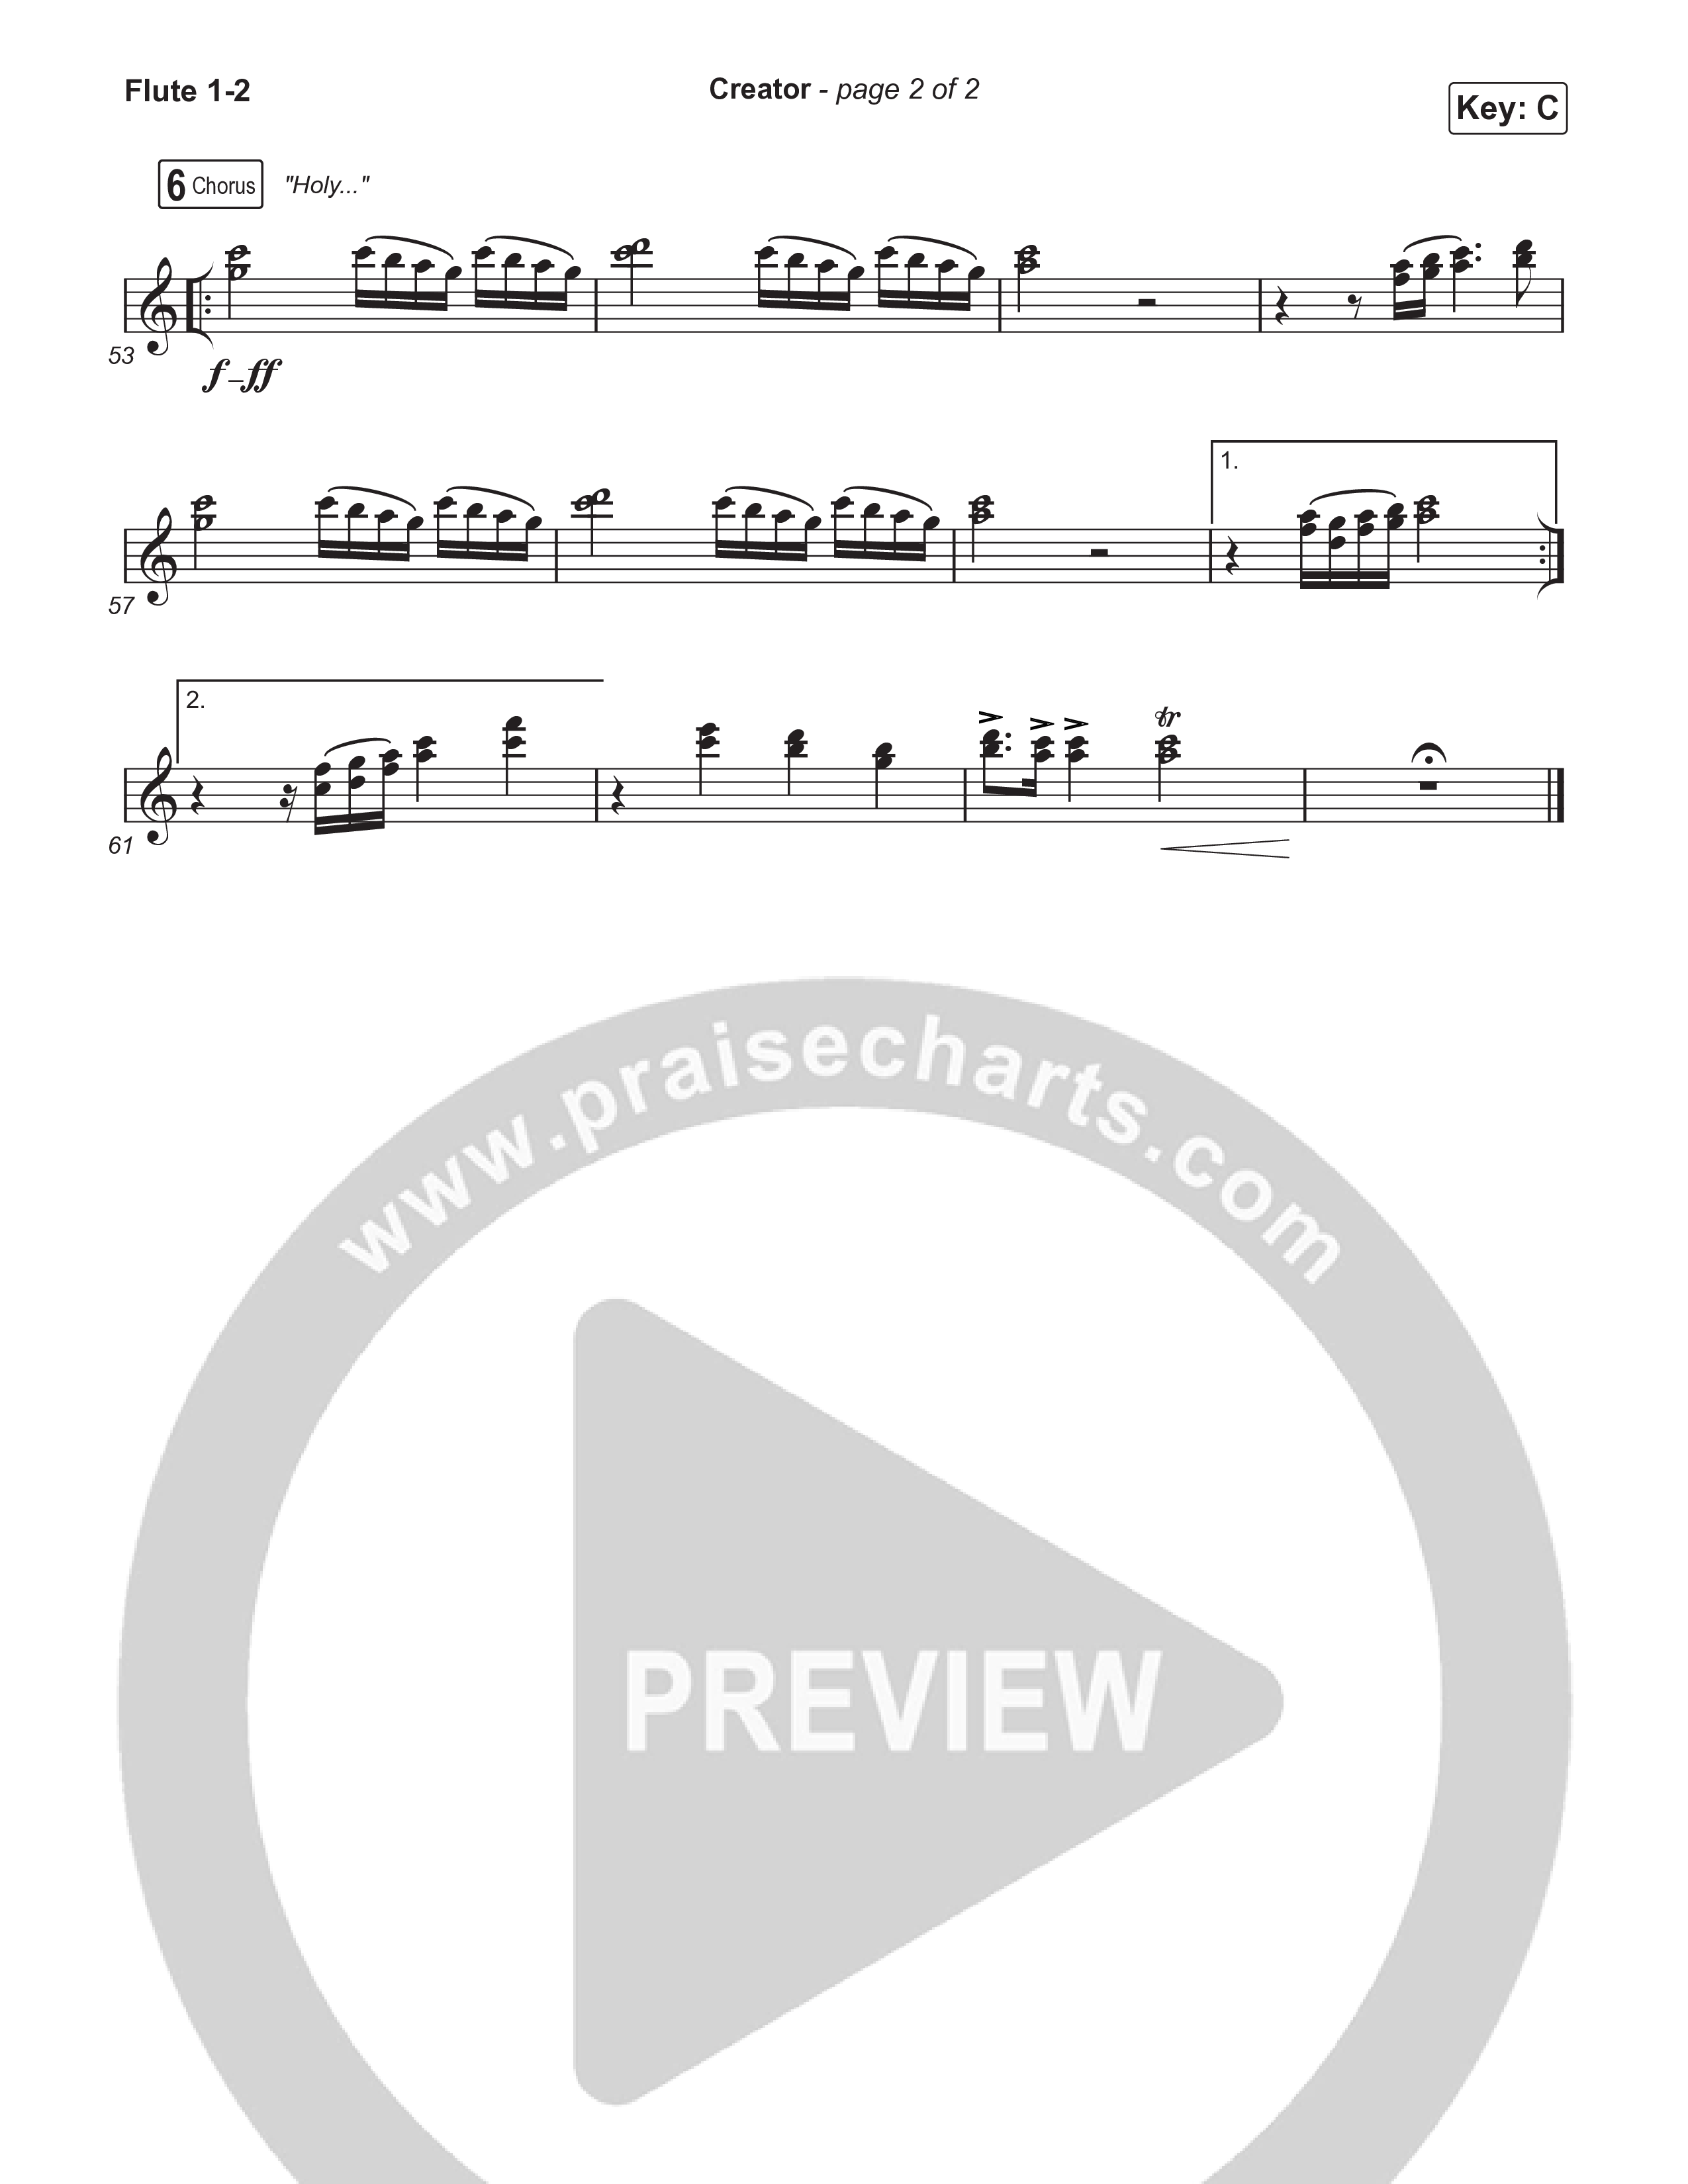 Creator (Worship Choir/SAB) Flute 1/2 (Phil Wickham)